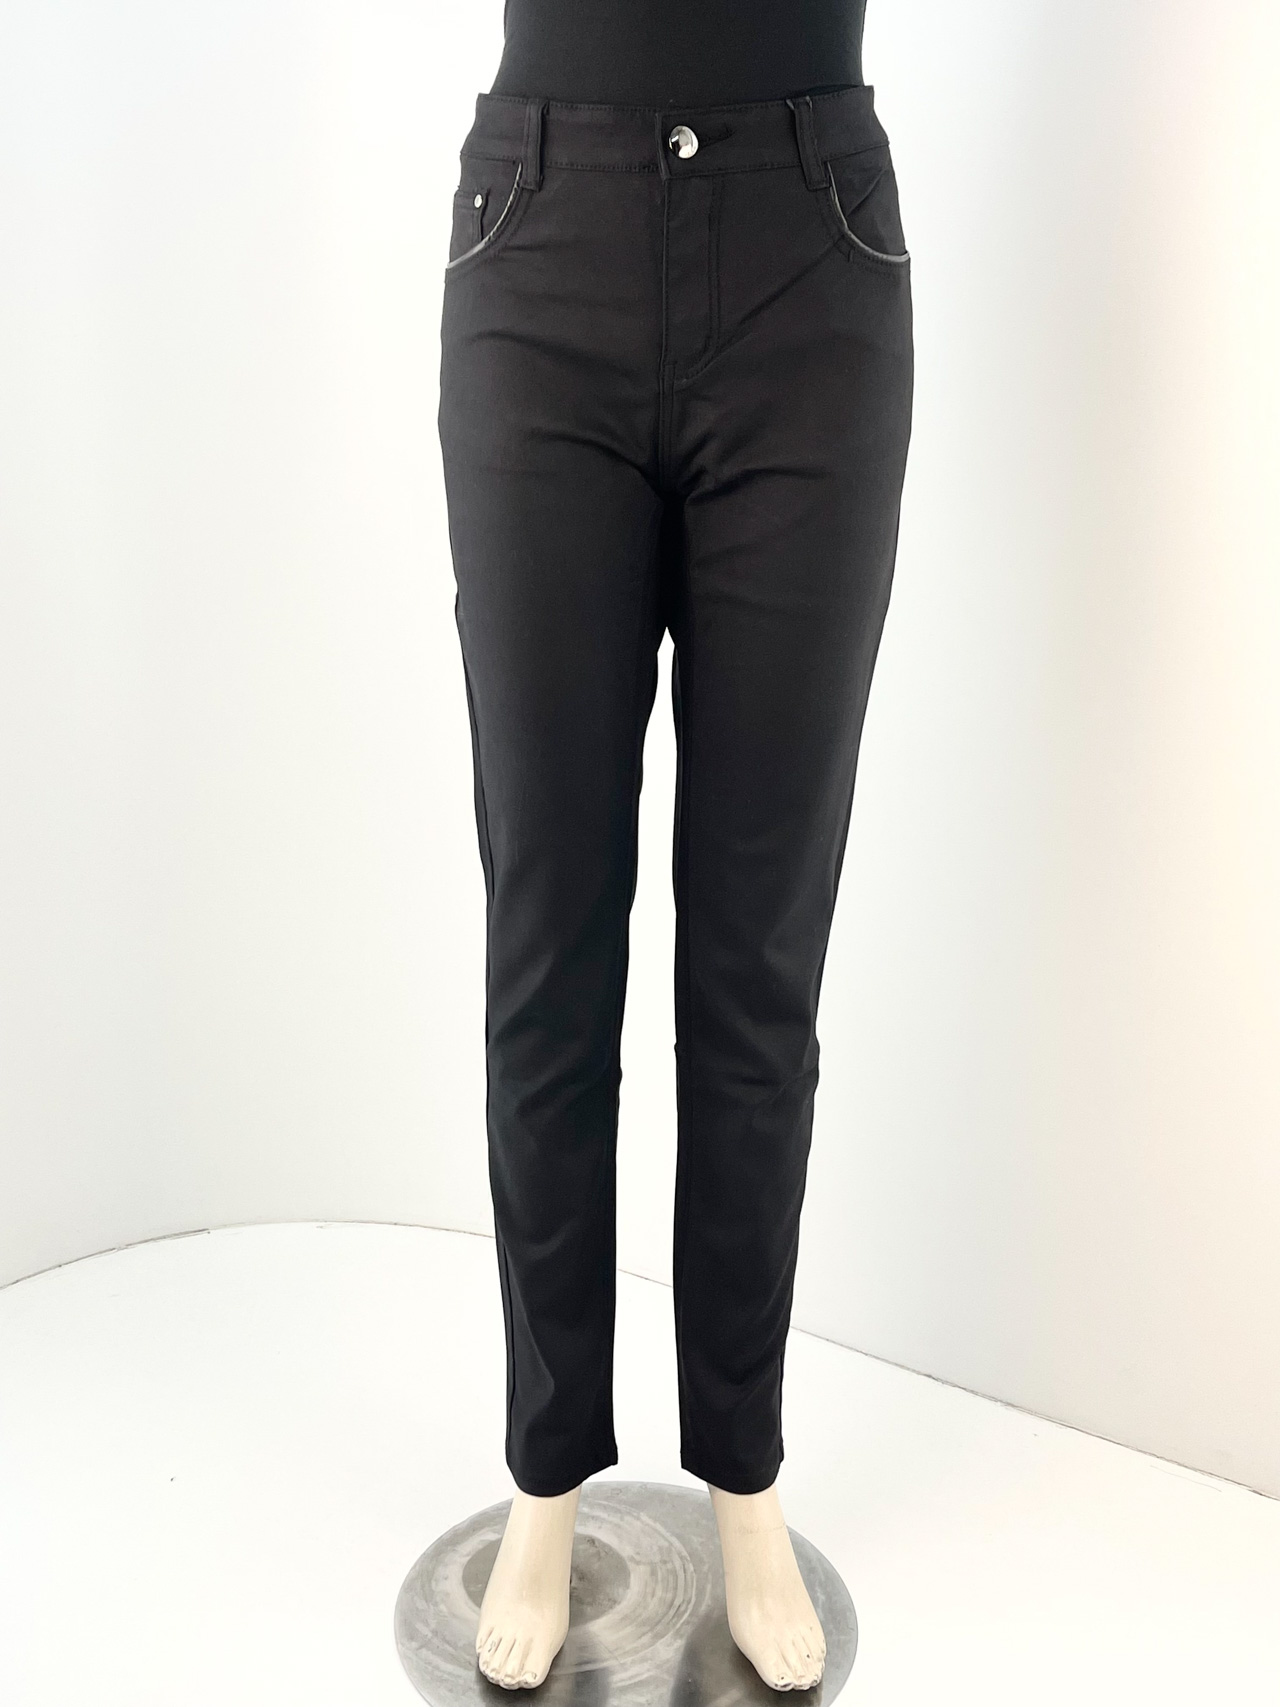 Παντελόνι πεντάτσεπο γυναικείο κωδ. MAR01MF5265 μαύρο μπροστινή όψη